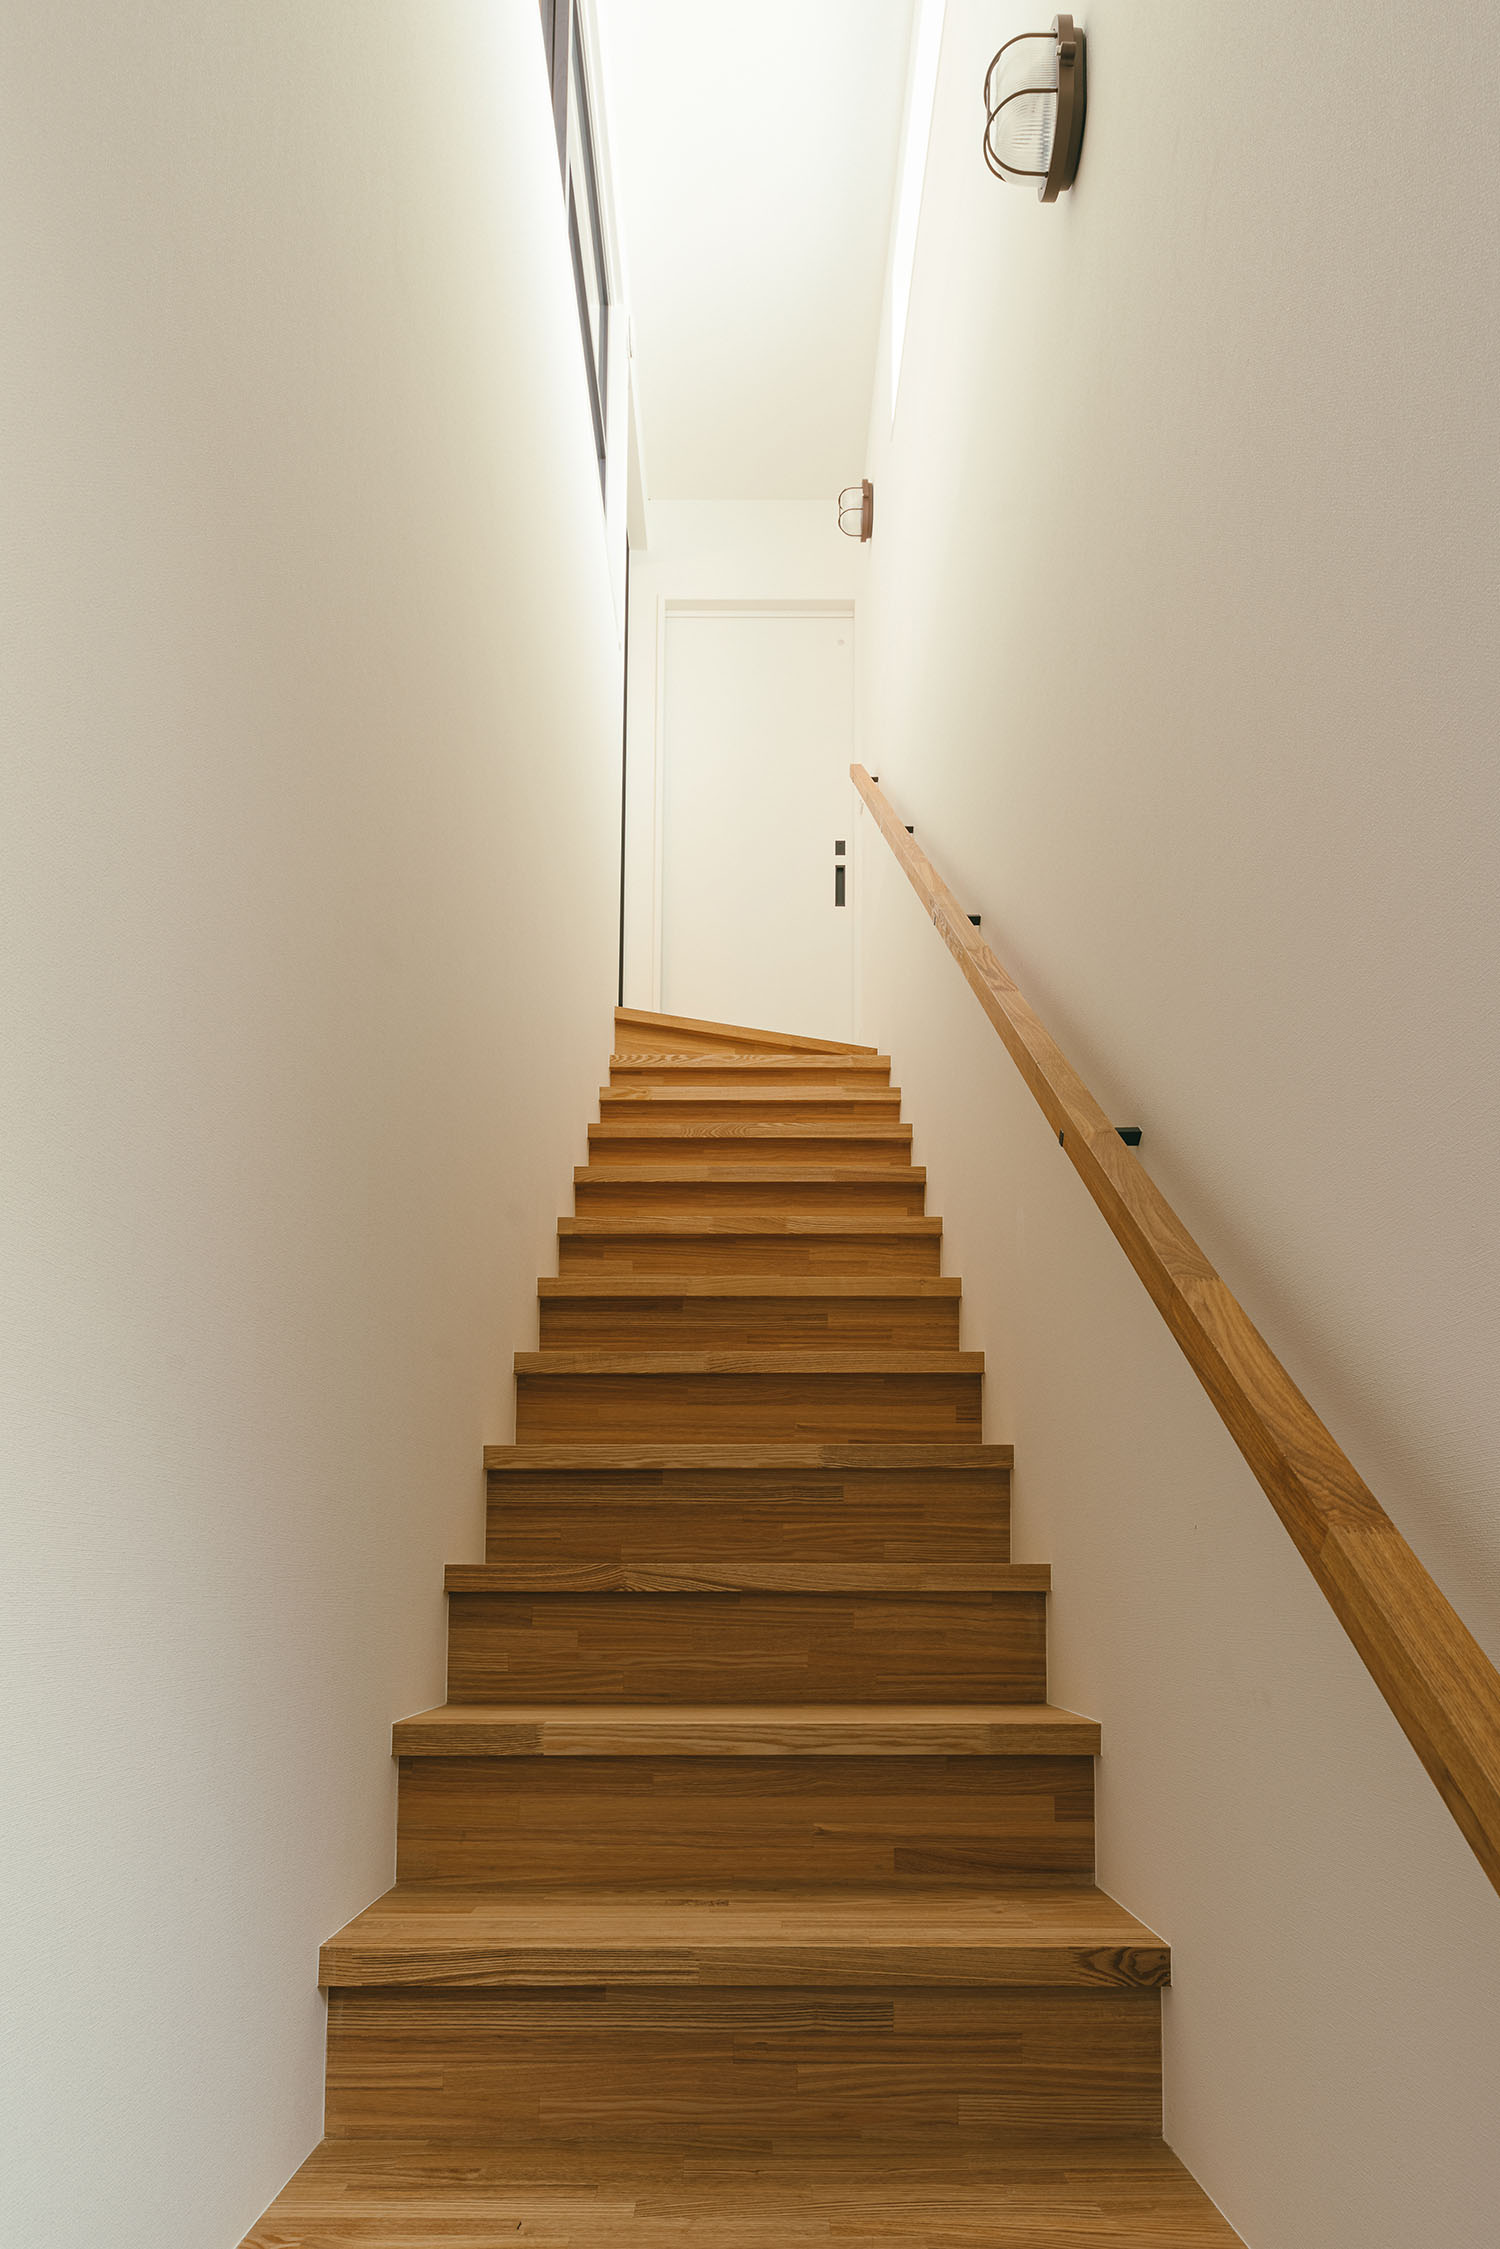 注文住宅・階段・箱型階段・木製の階段・スリット窓